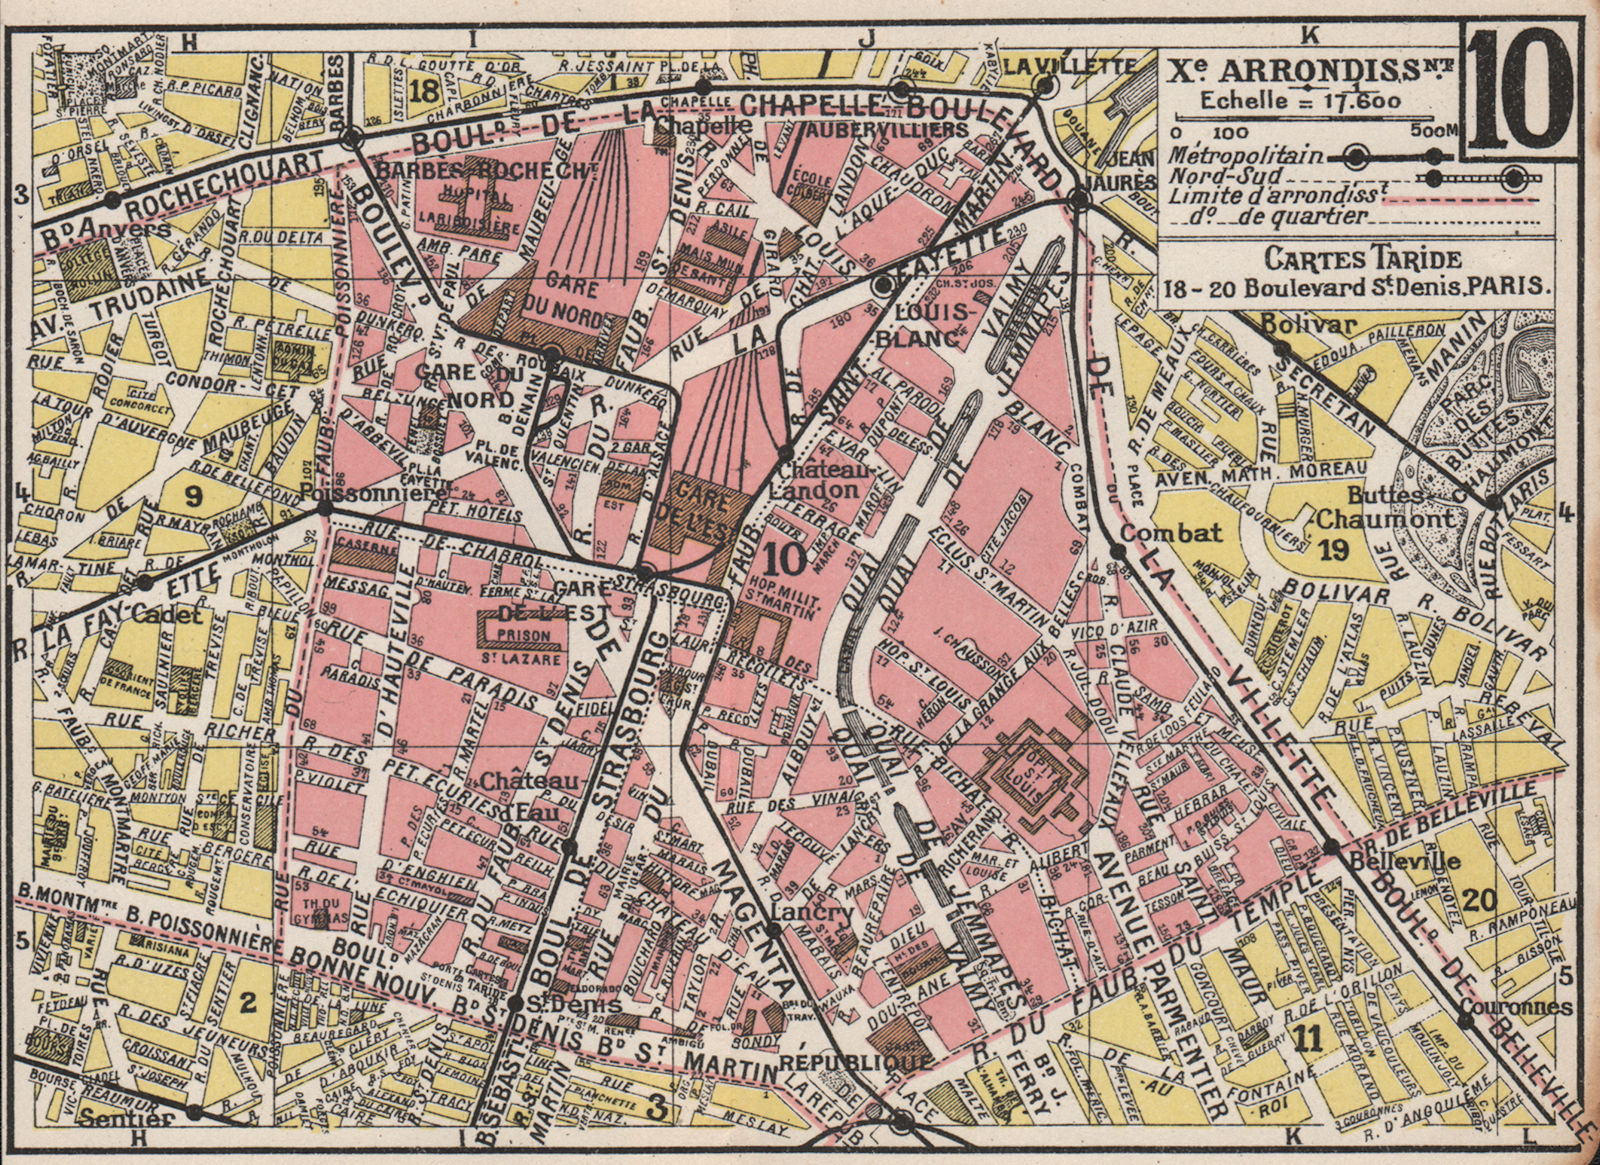 PARIS. 10th 10e Xe. Arrondissement. Entrepôt. TARIDE 1926 old vintage map